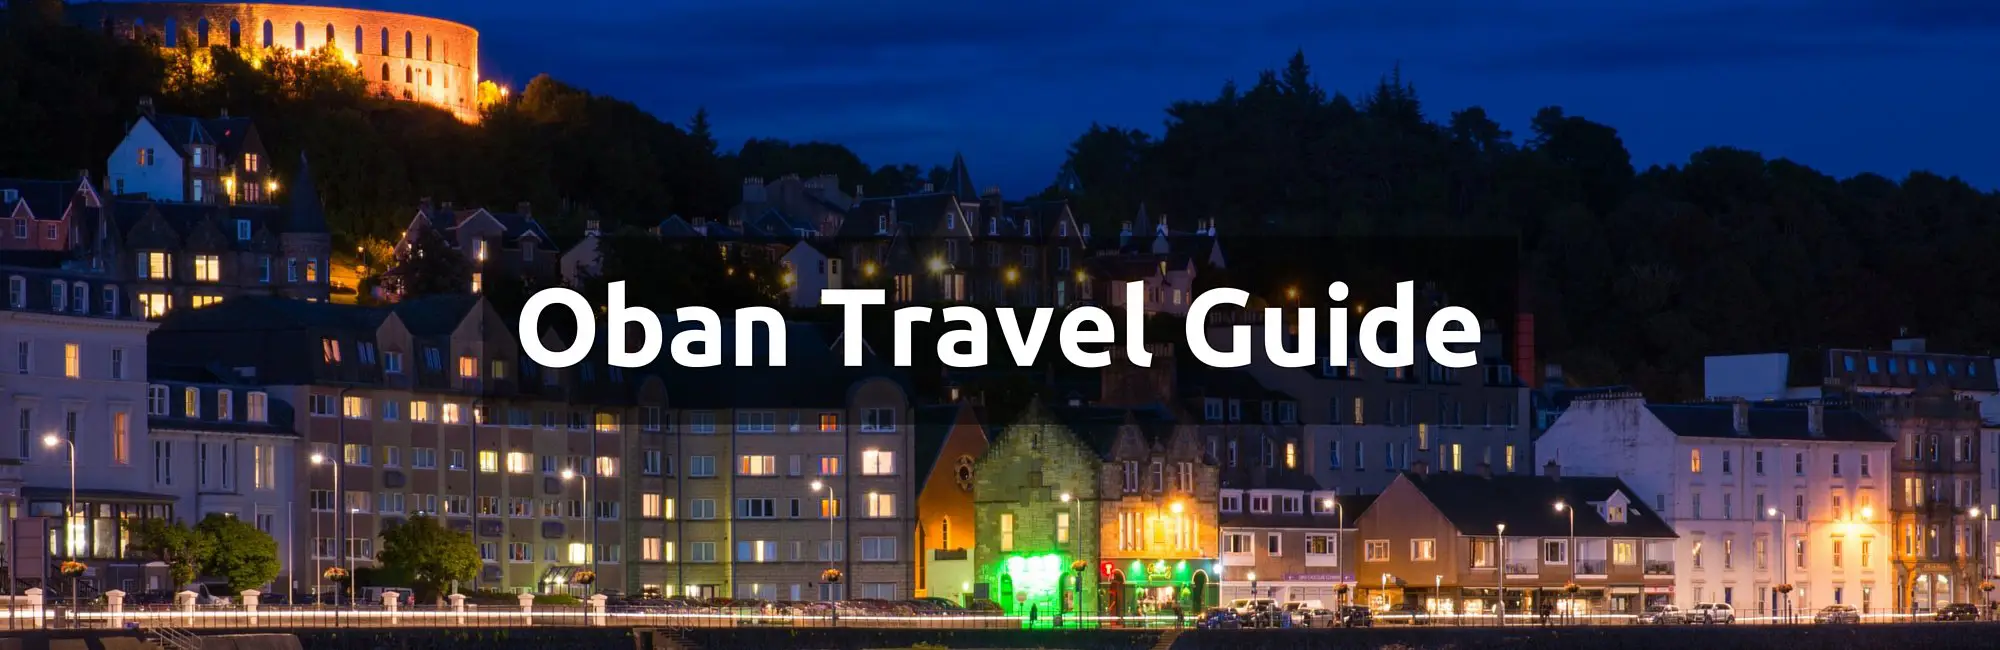 Oban-Travel-Guide-5